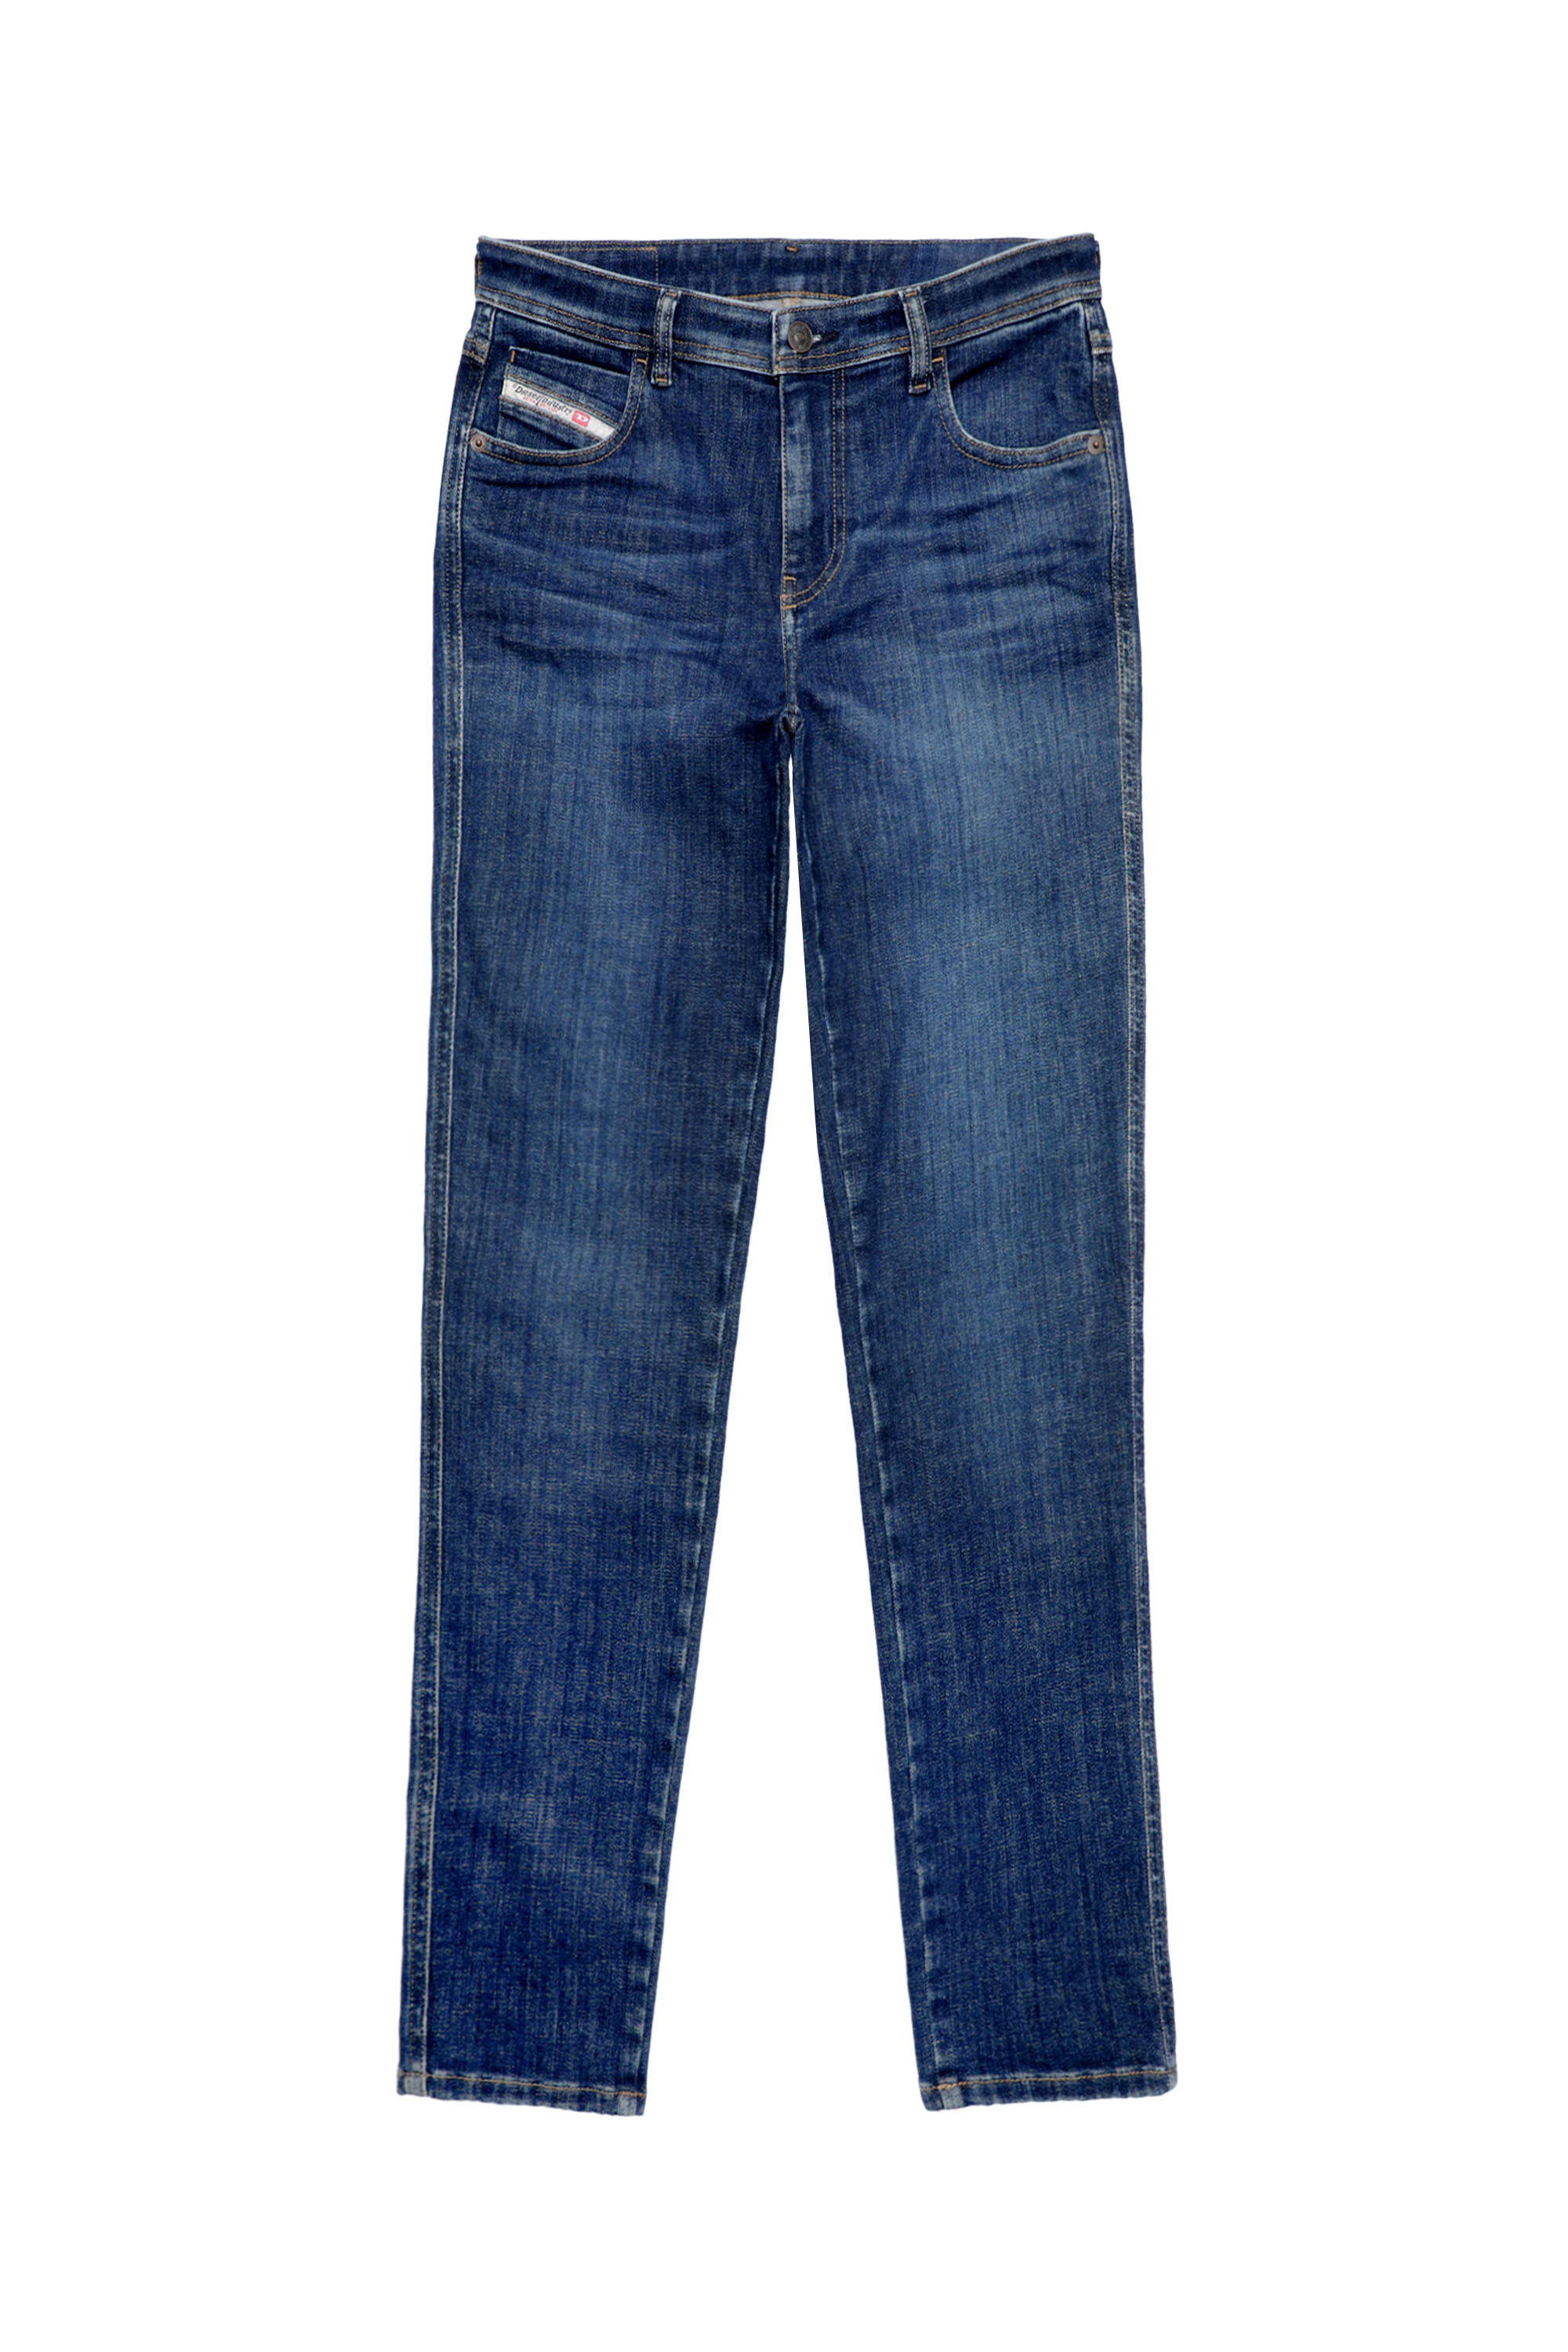 2015 BABHILA 09C58 Skinny Jeans, Azul Oscuro - Vaqueros